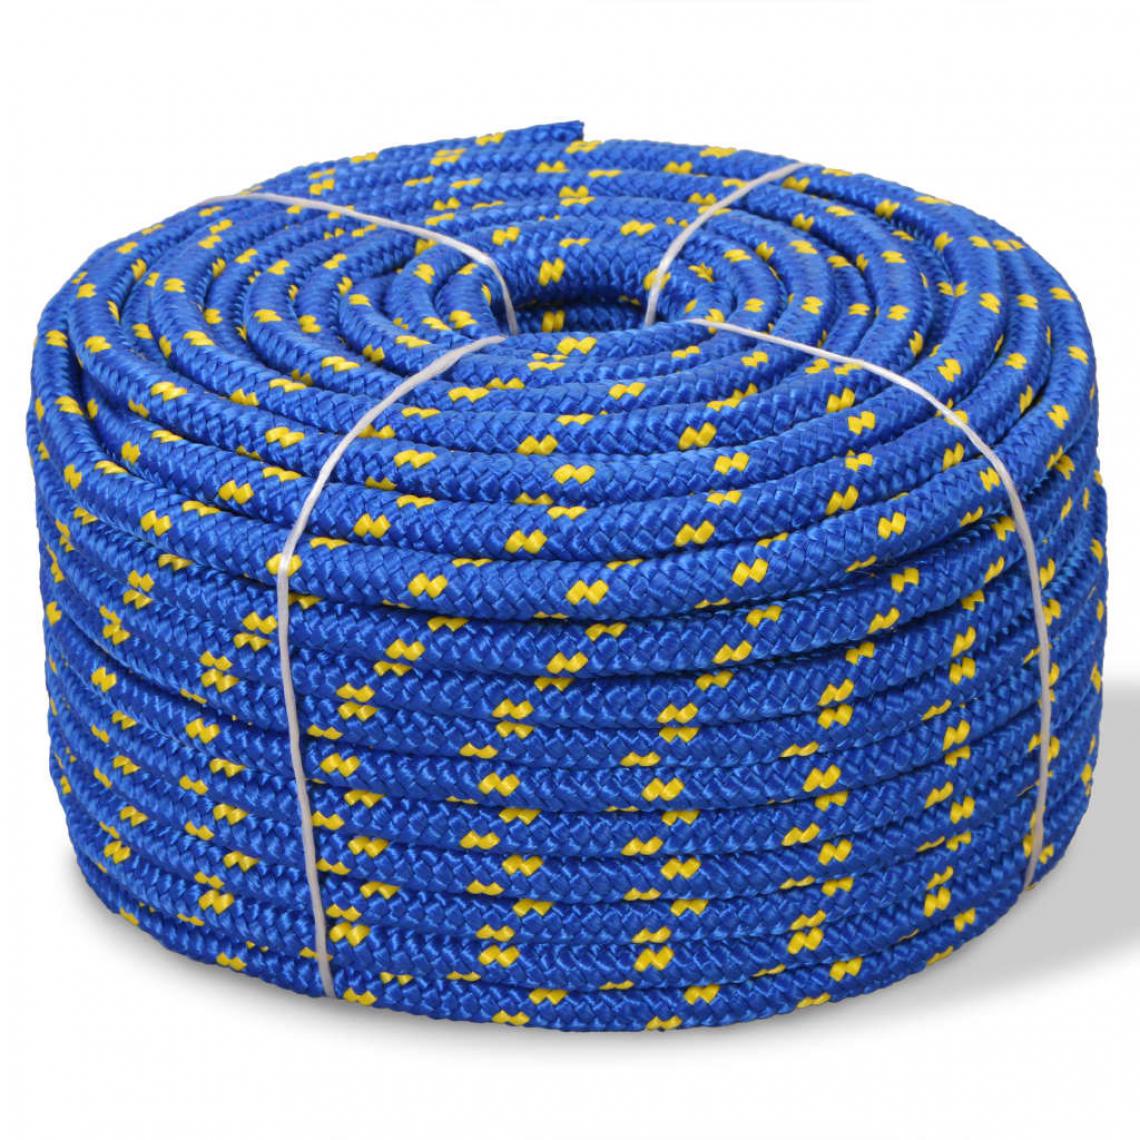 Icaverne - Superbe Chaînes, câbles et cordes categorie Dakar Corde de bateau Polypropylène 8 mm 500 m Bleu - Corde et sangle